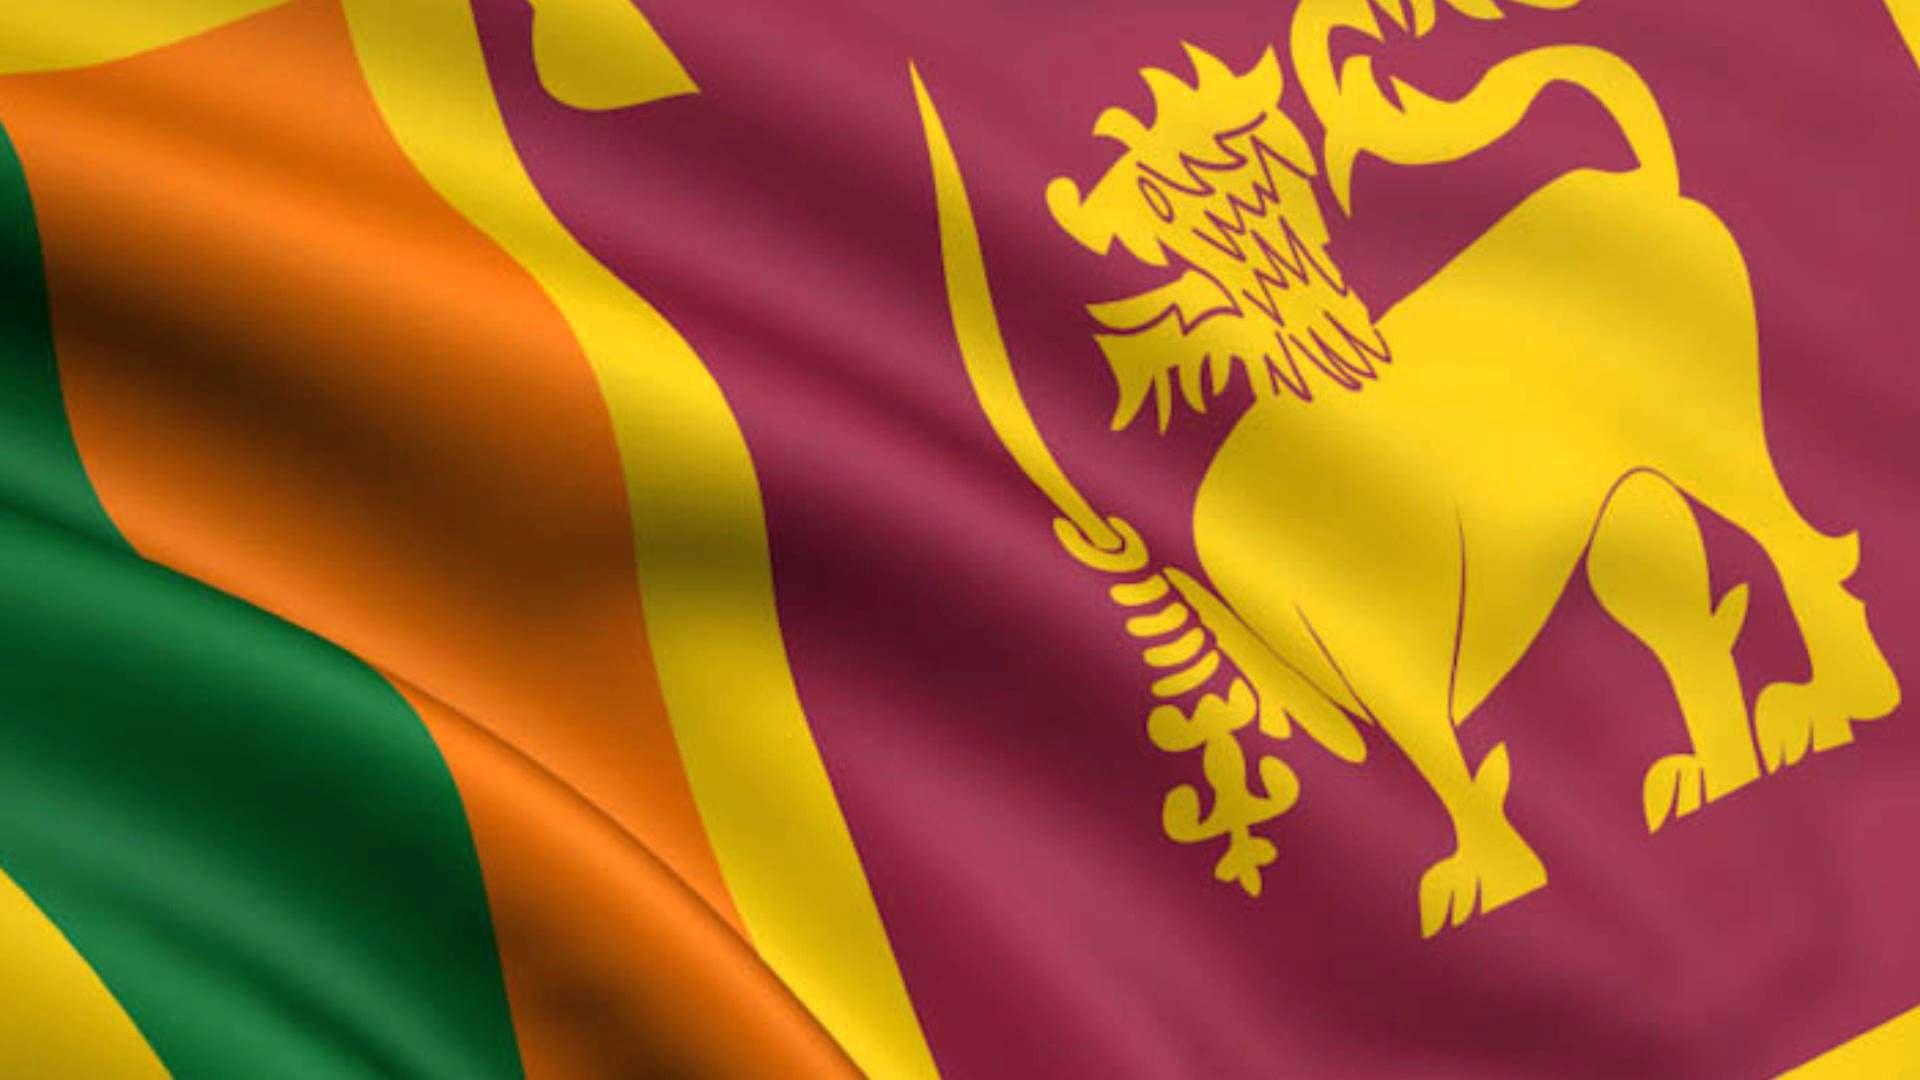 Sri Lanka Flag Wallpaper. Sri lanka flag, National flag, Sri lankan flag